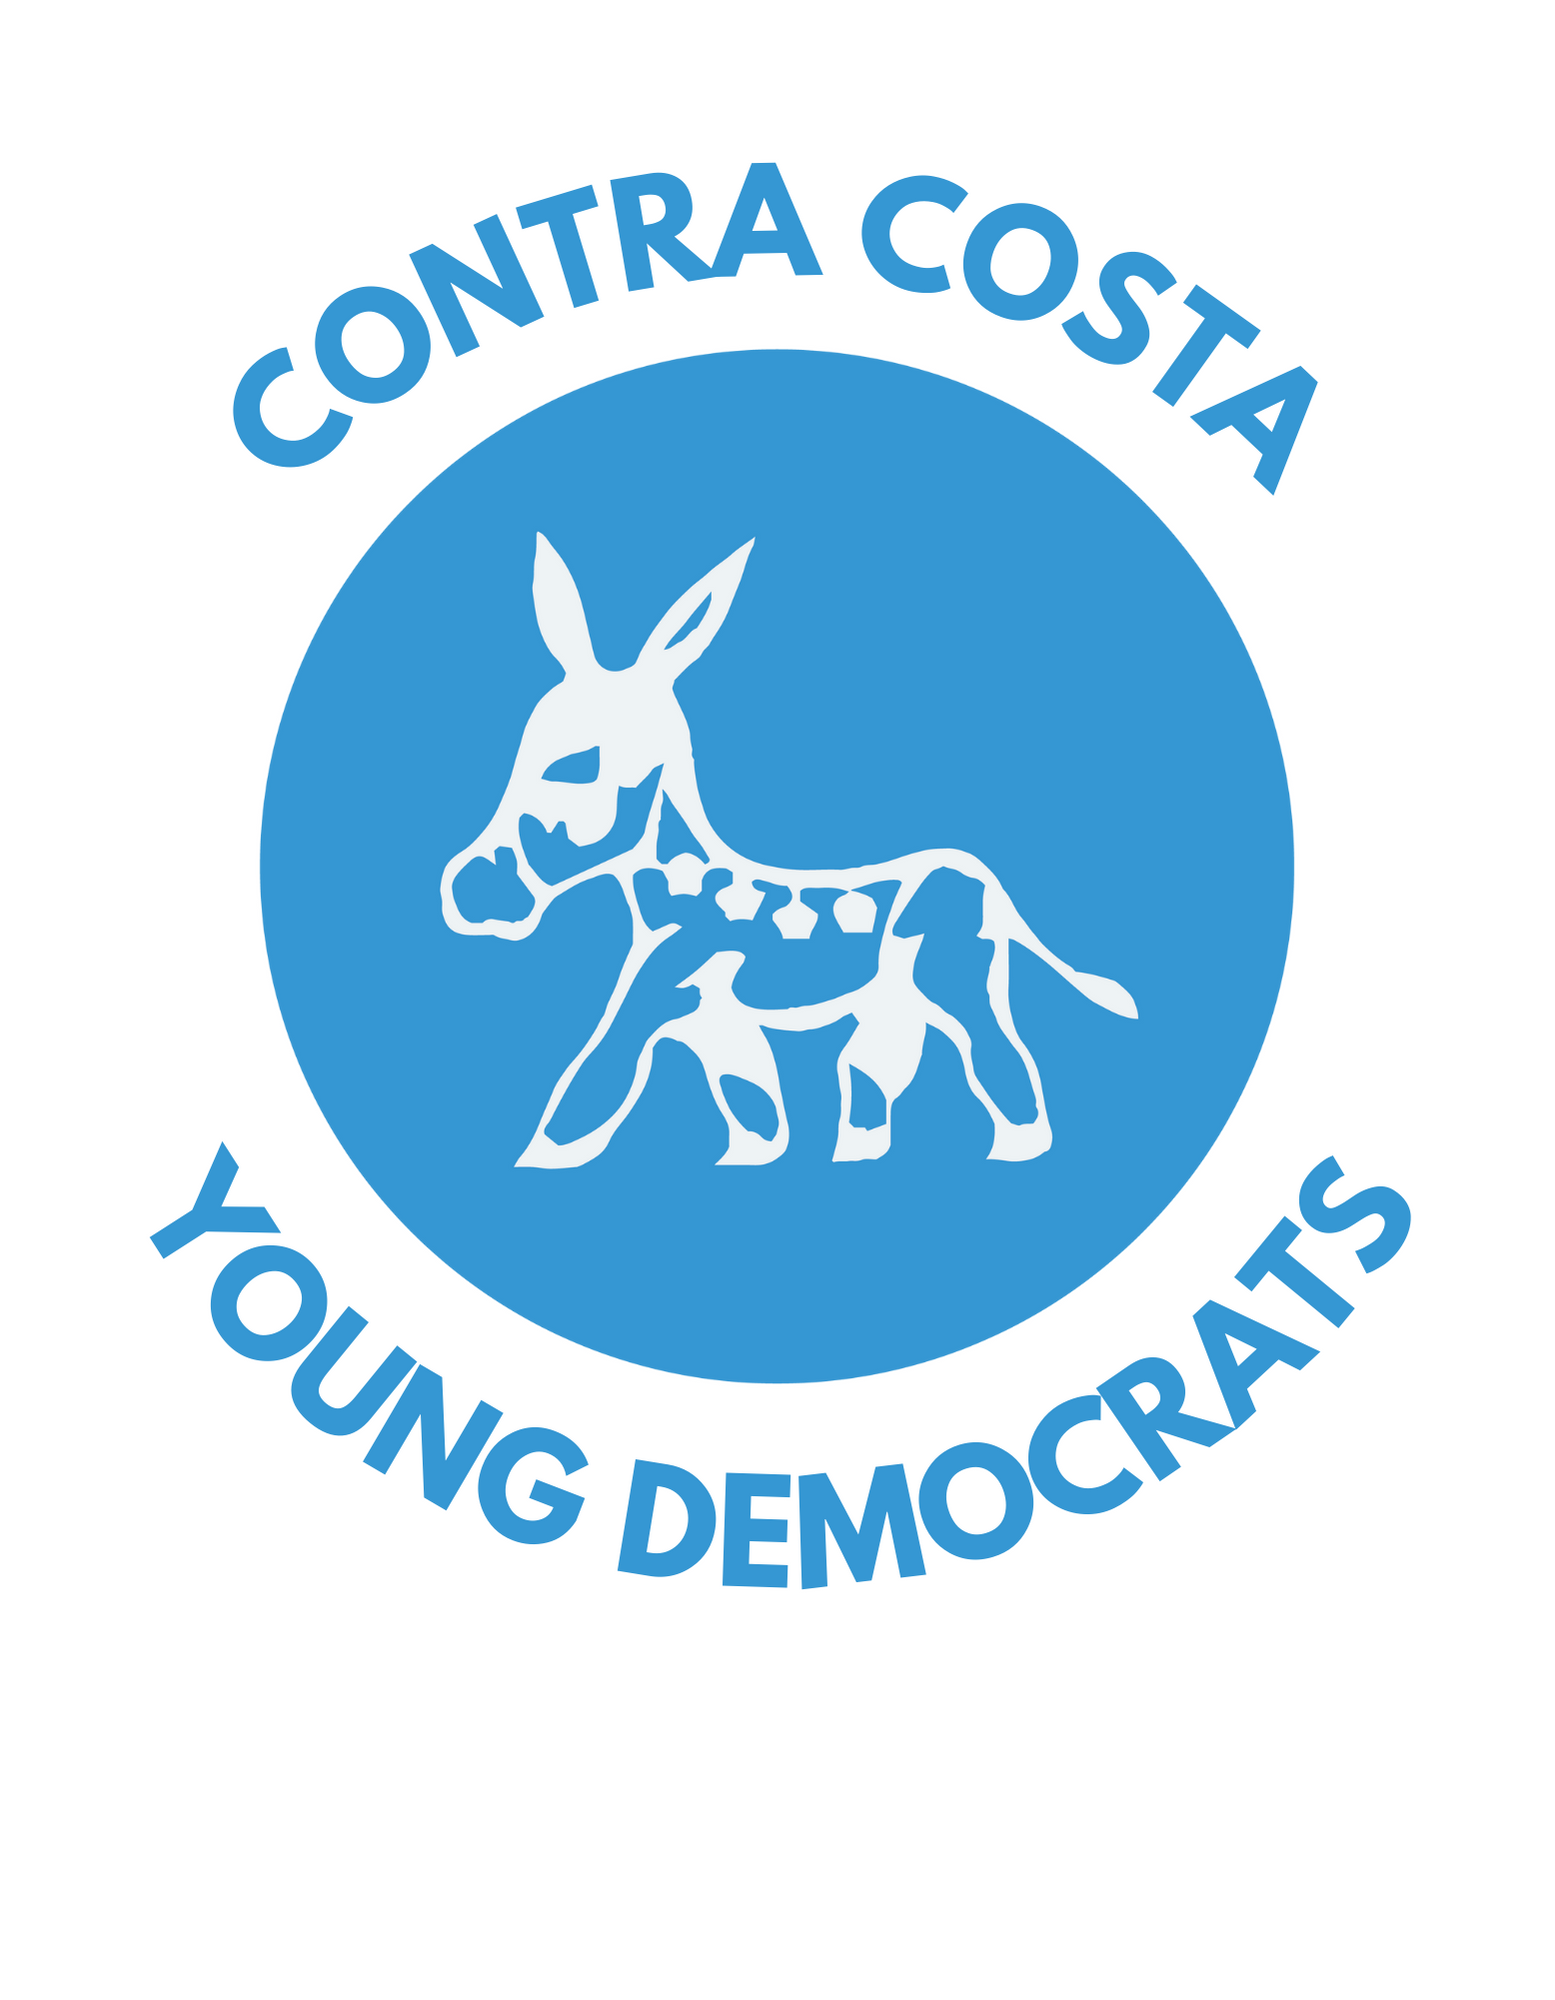 Contra Costa Young Democrats